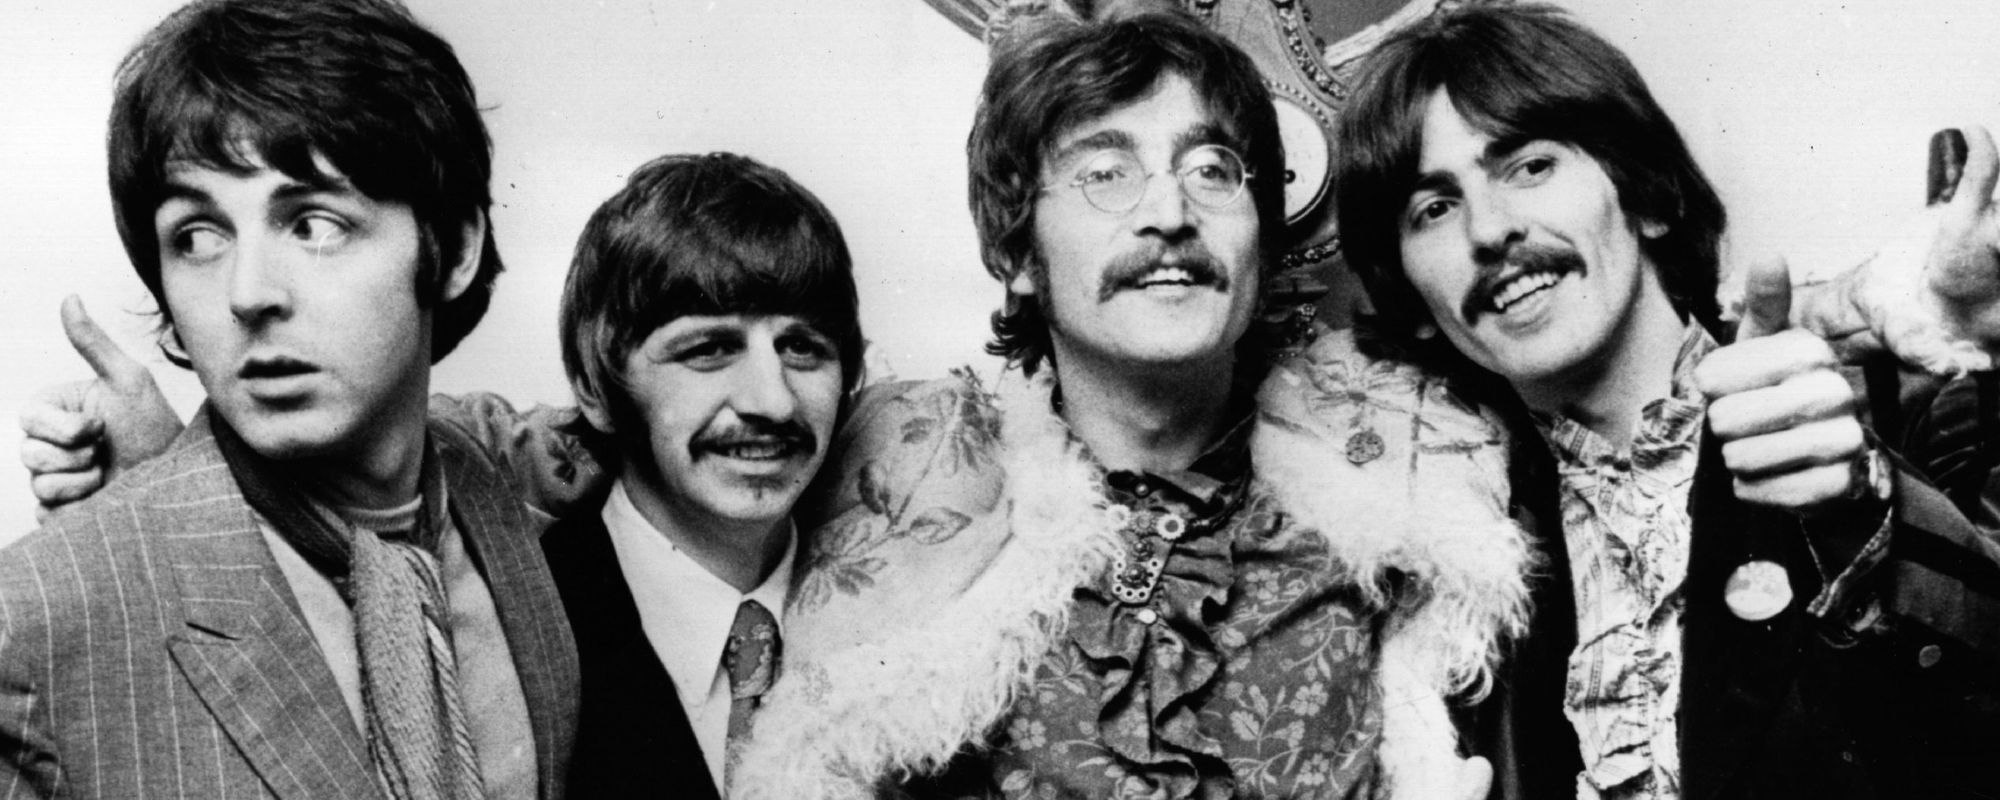 Each of the Beatles’ Least Favorite Beatles Album